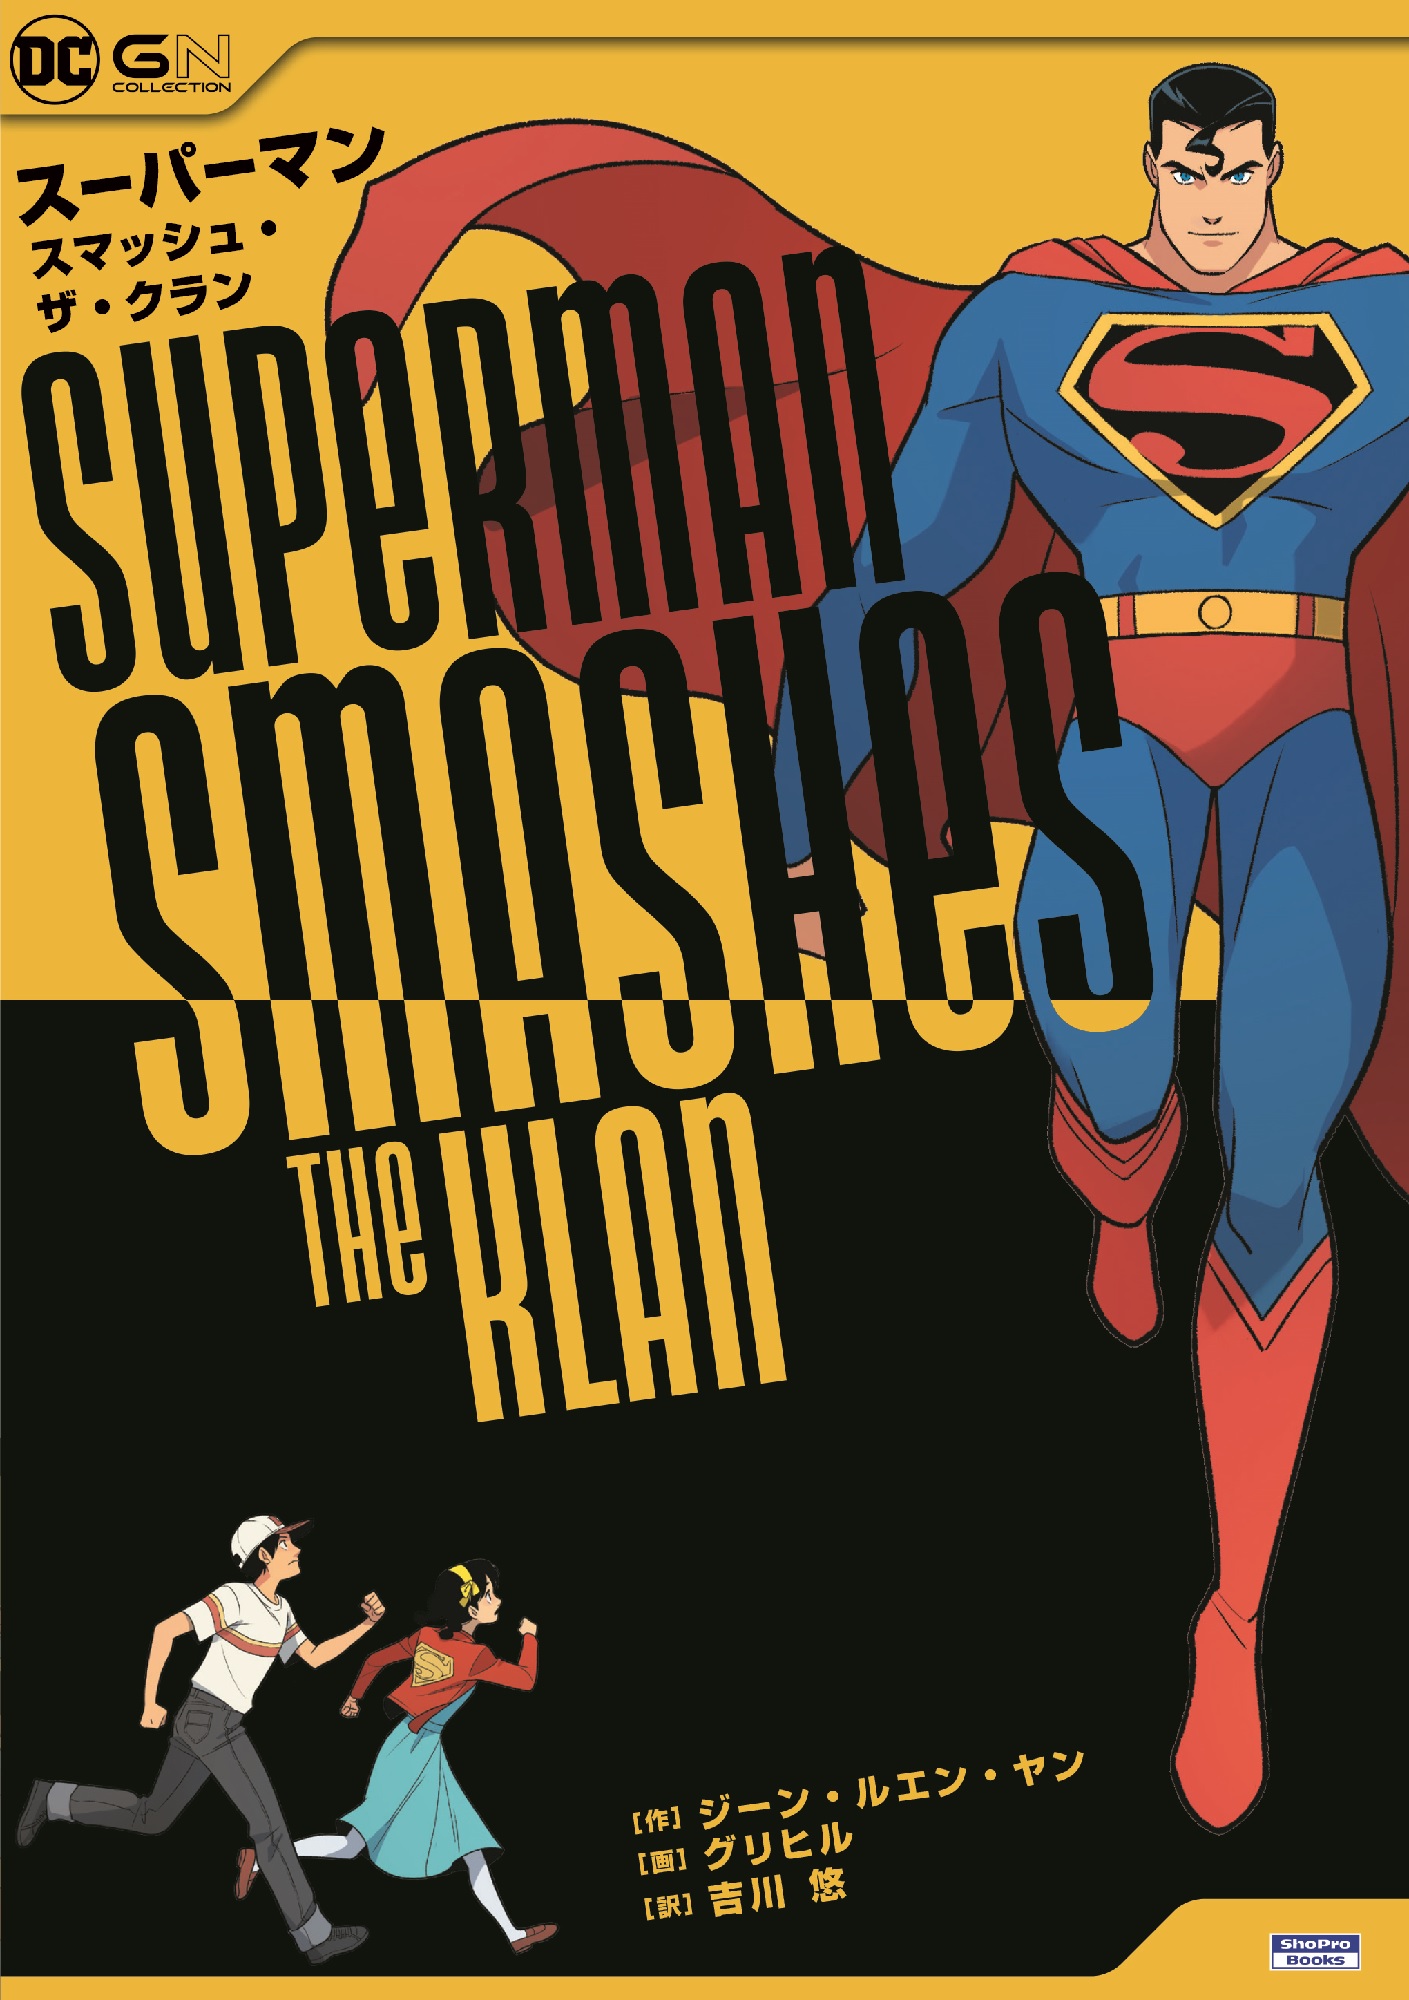 スーパーマン・スマッシュ・ザ・クランの商品画像